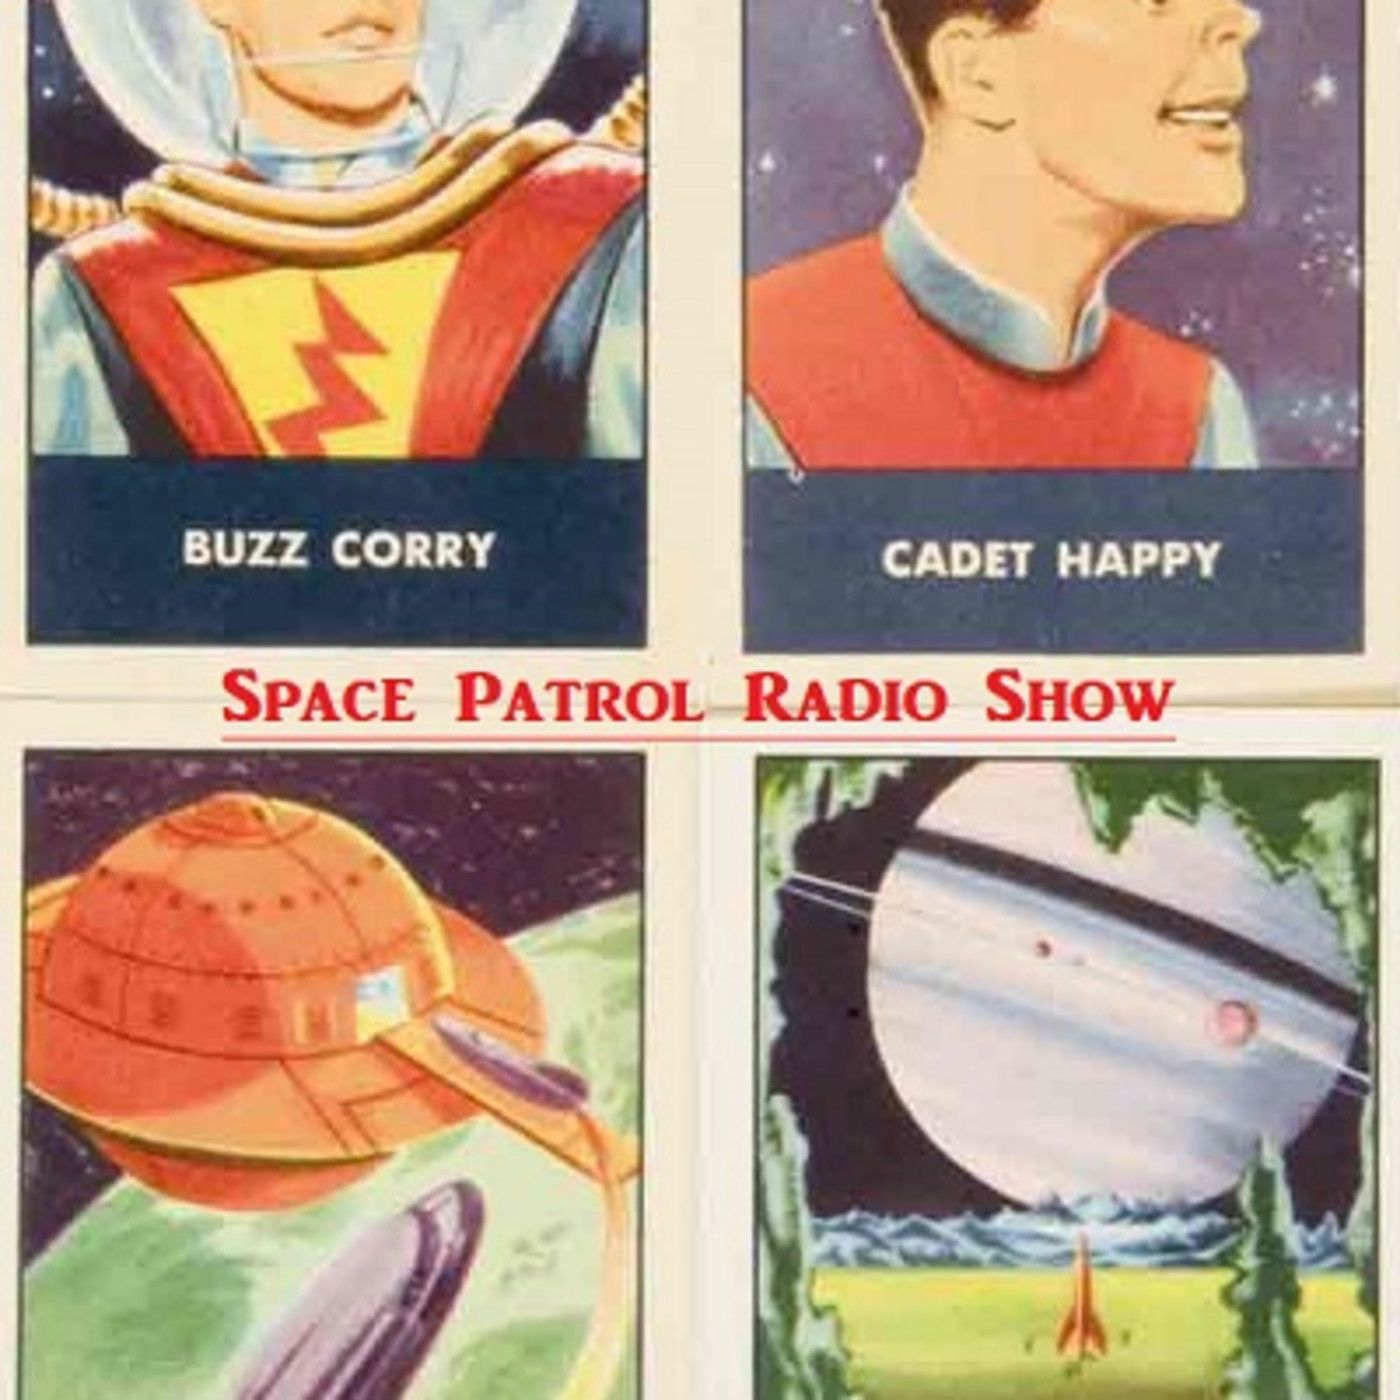 Space Patrol 54-03-27 078 The Zero Ray